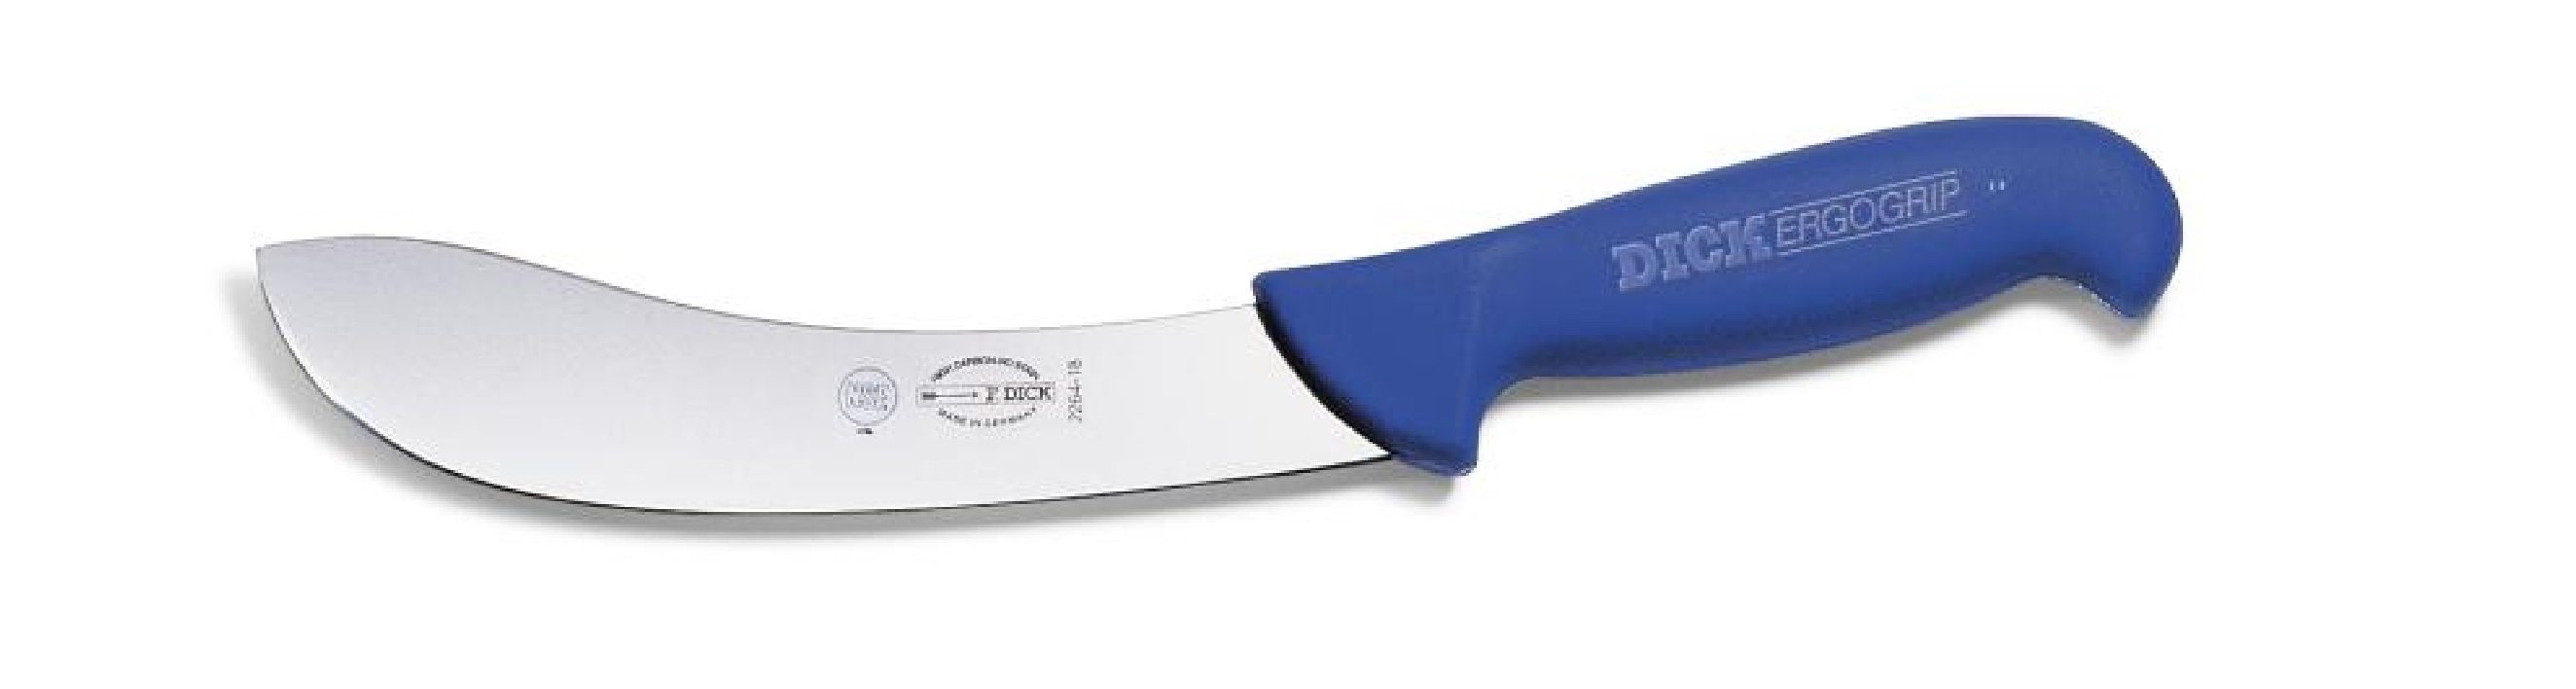 Abhäutemesser Messer Dick m. 15 cm Klinge Dick Ergogrip Kochmesser 8226415